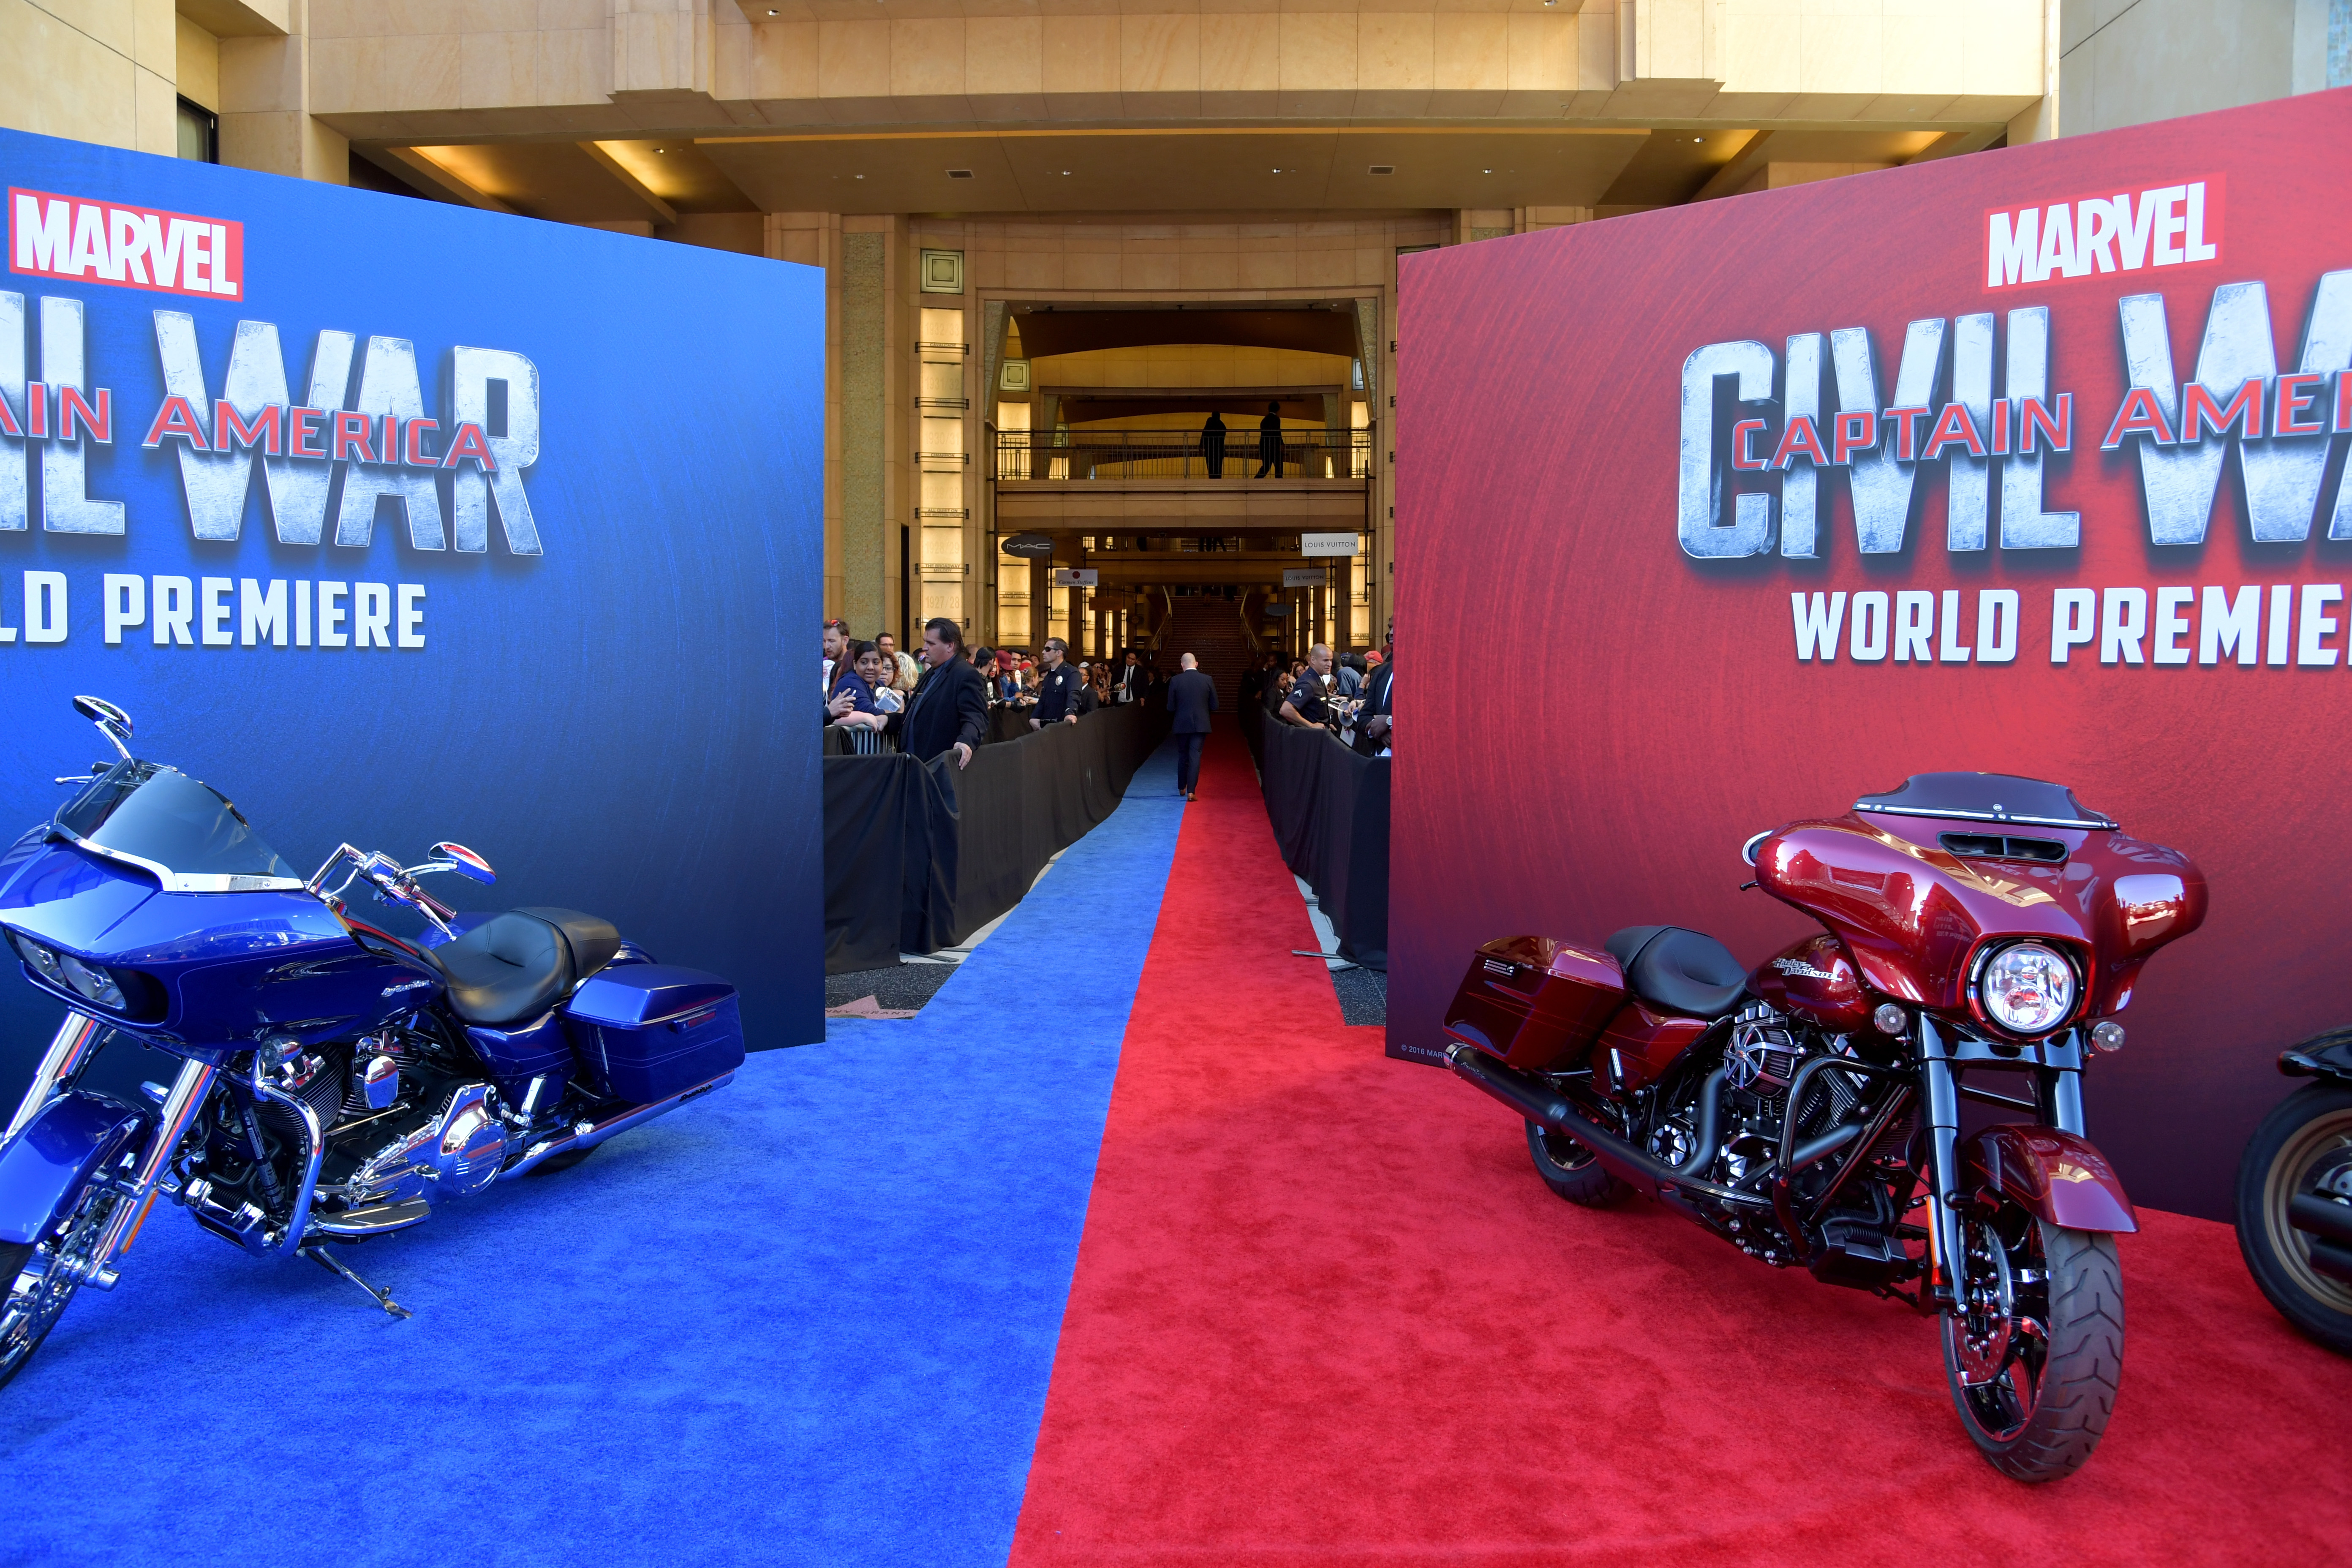 Marvel’s "Captain America: Civil War” premiere photos